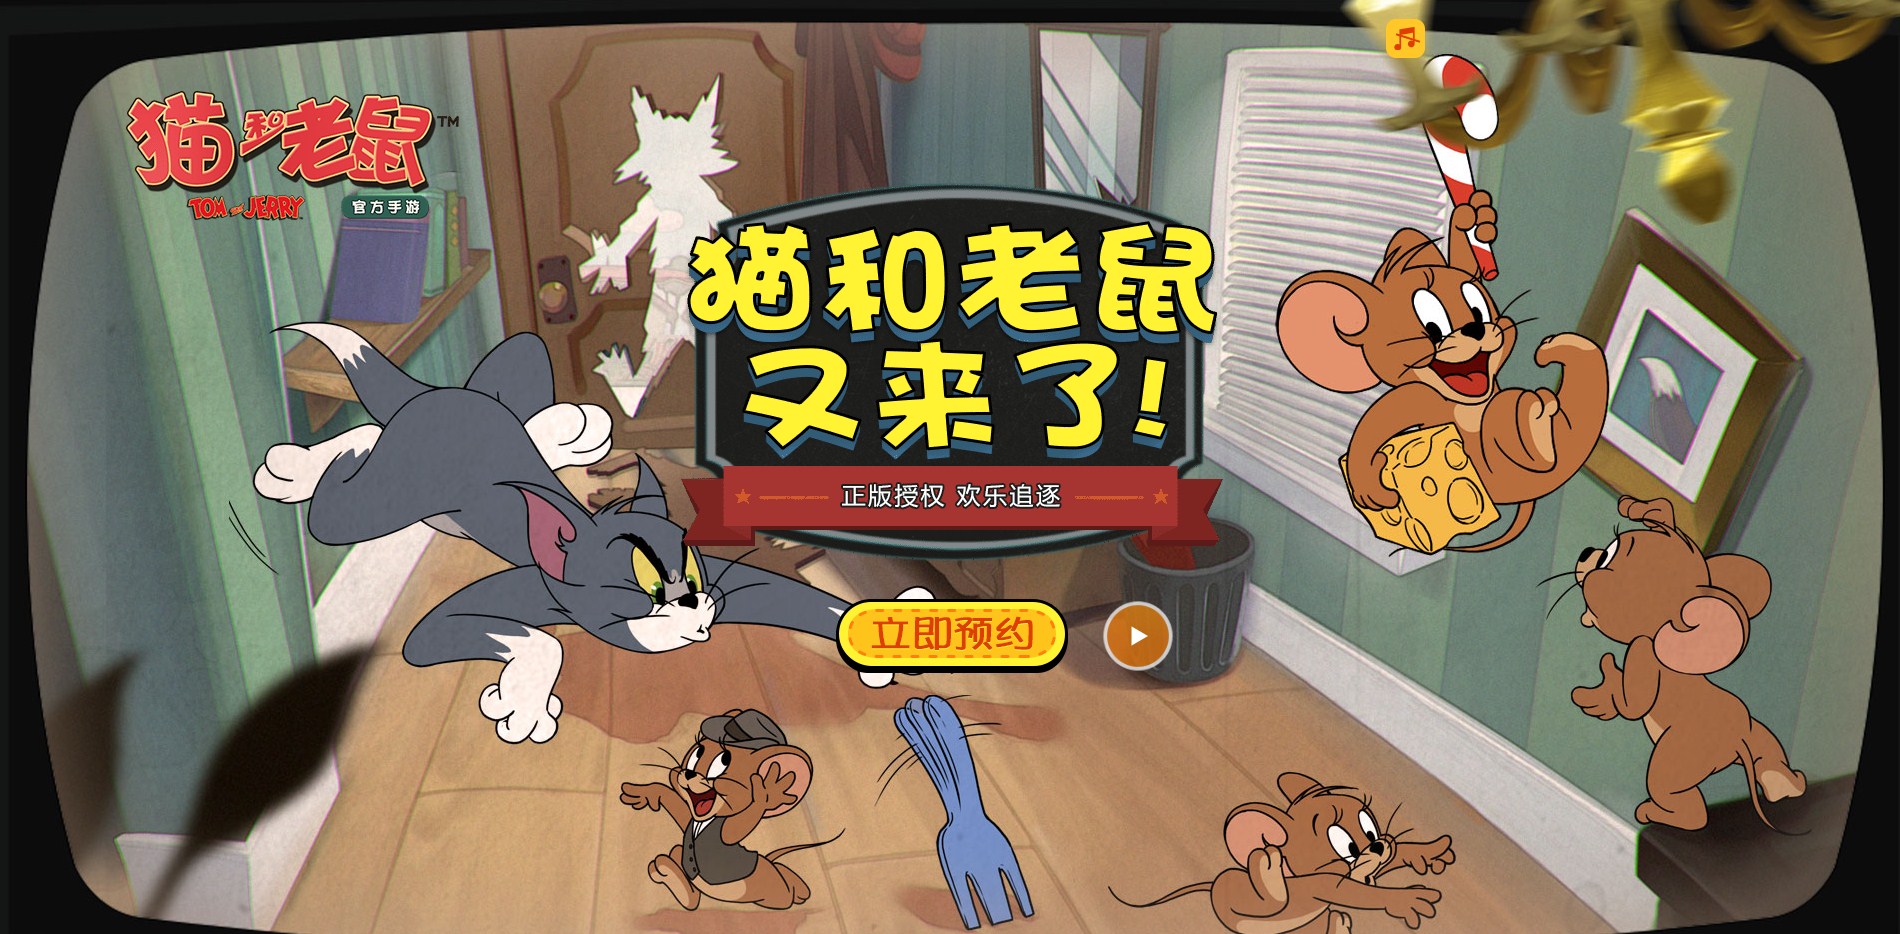 Netease Giới Thiệu Game Mobile 'Ăn Theo' Phim Hoạt Hình Tom & Jerry